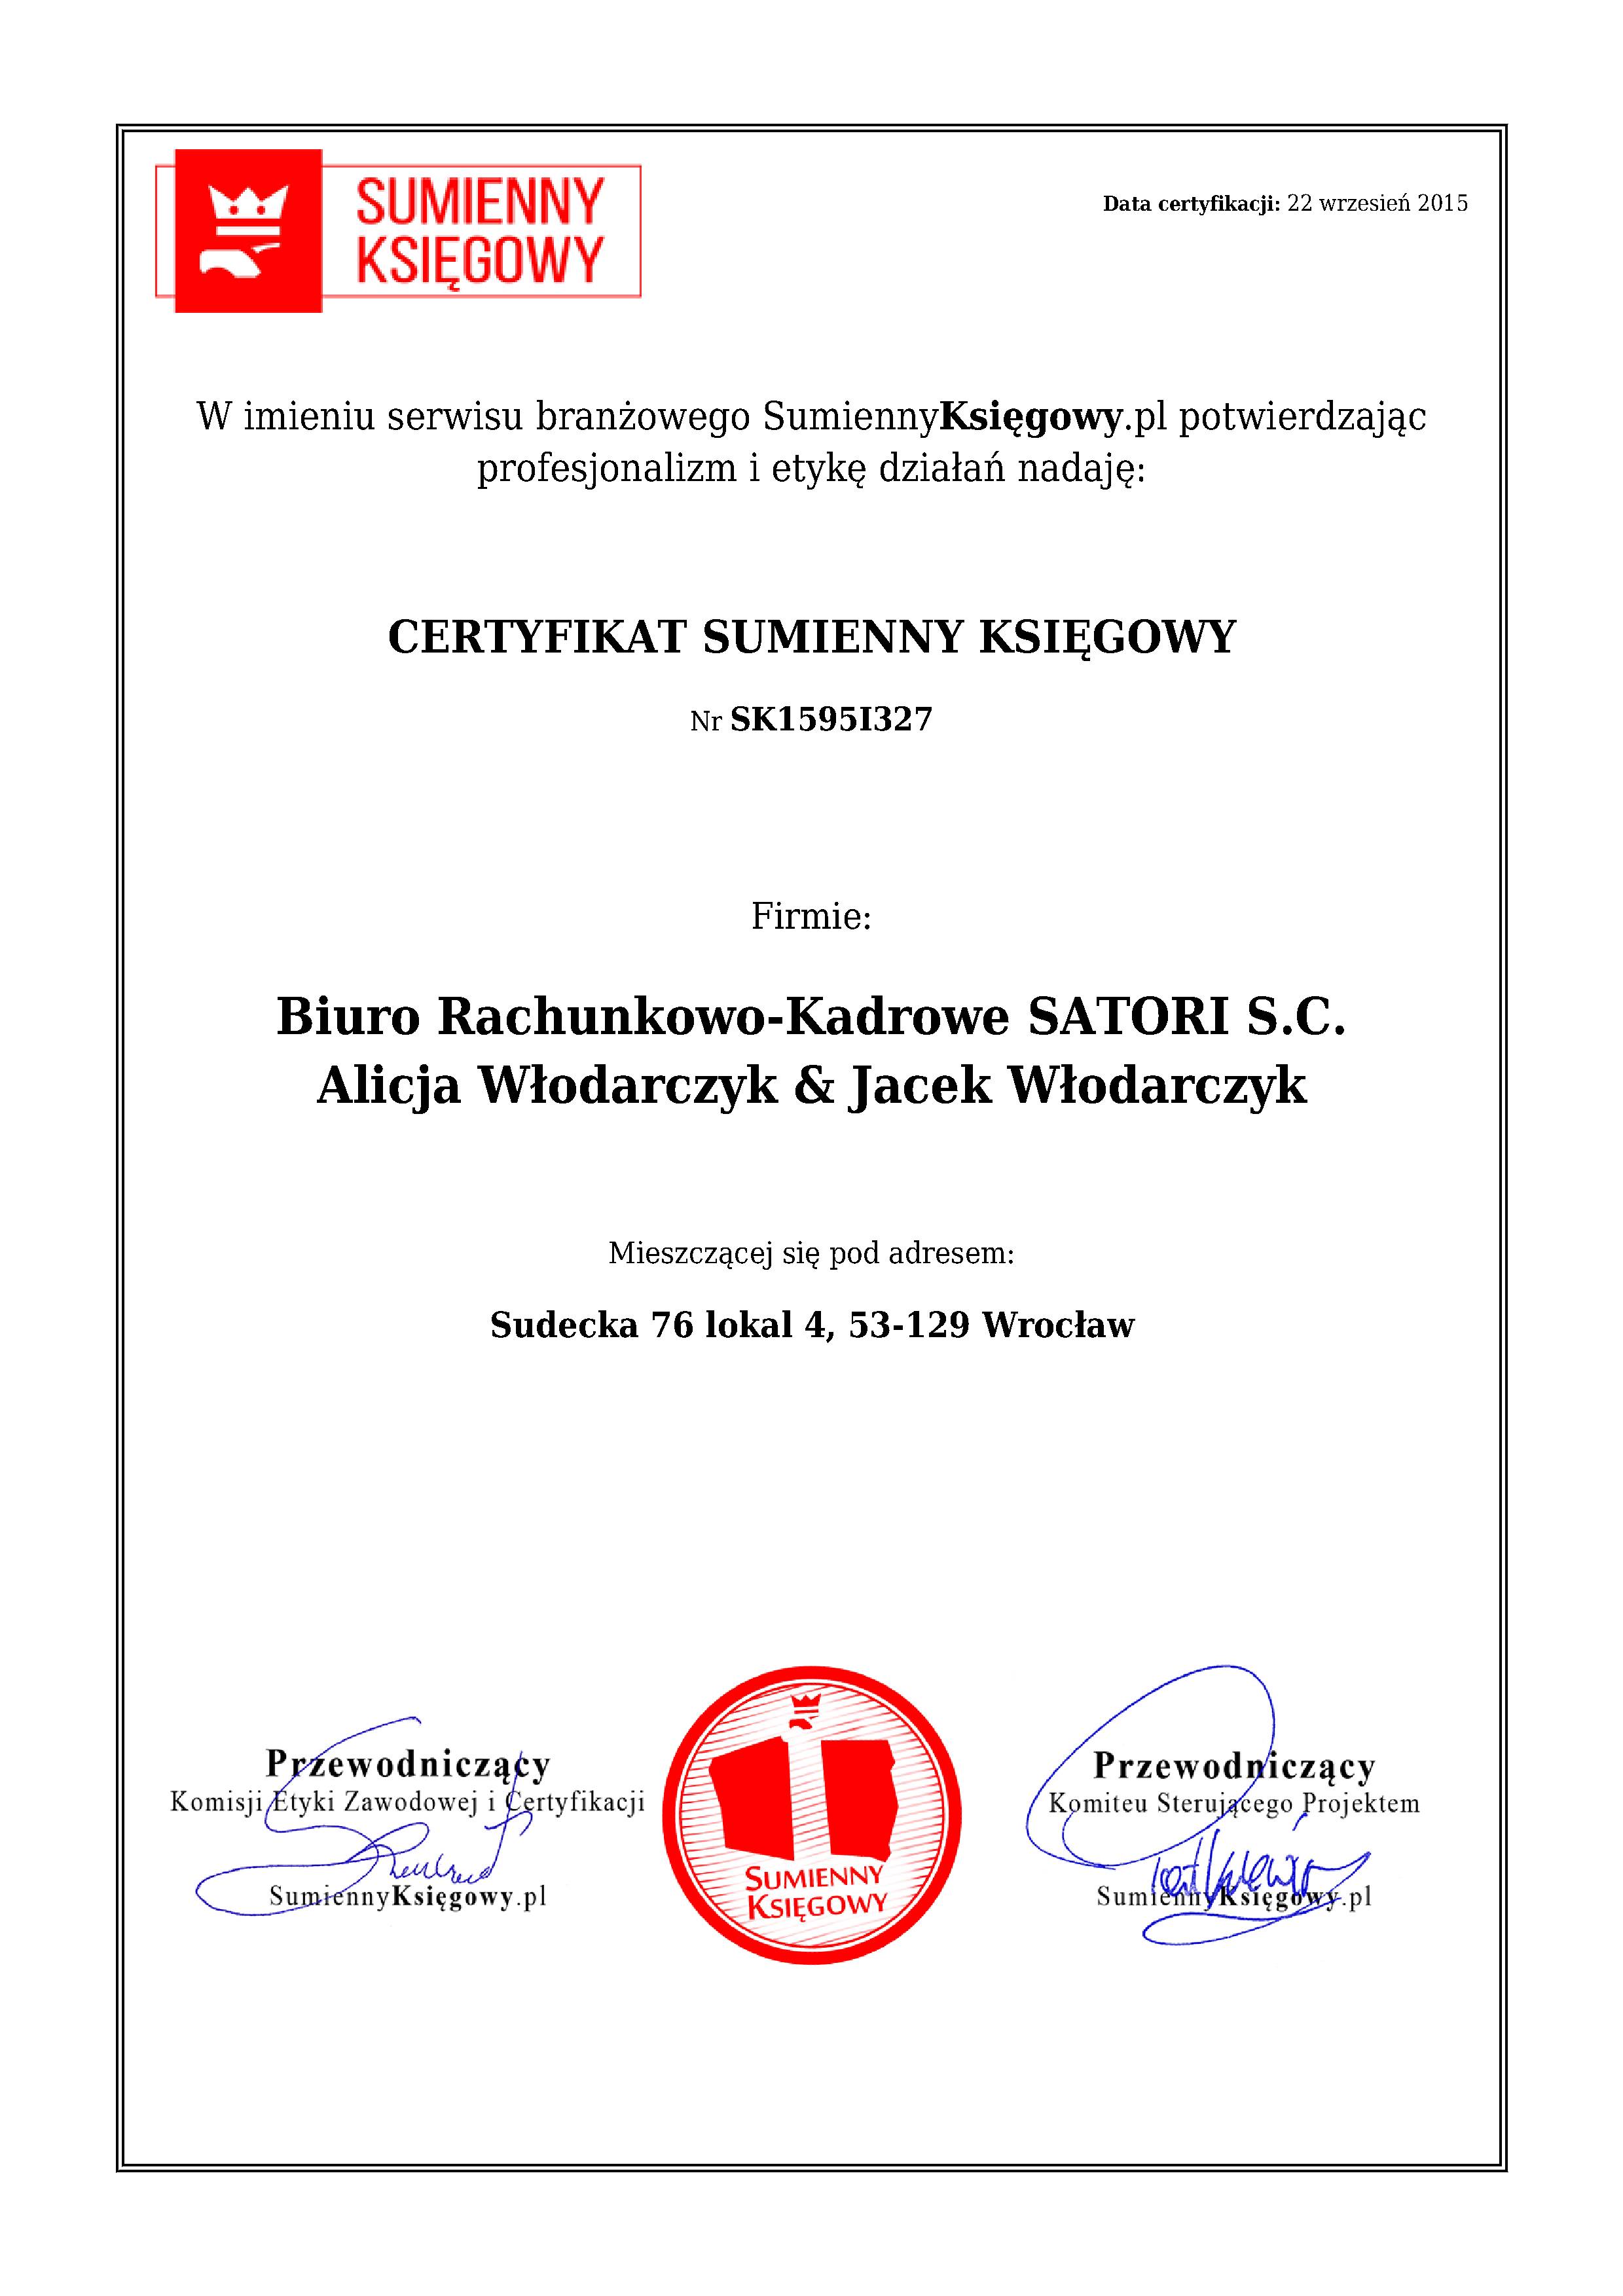 Certyfikat Biuro Rachunkowo-Kadrowe SATORI S.C. Alicja Włodarczyk & Jacek Włodarczyk